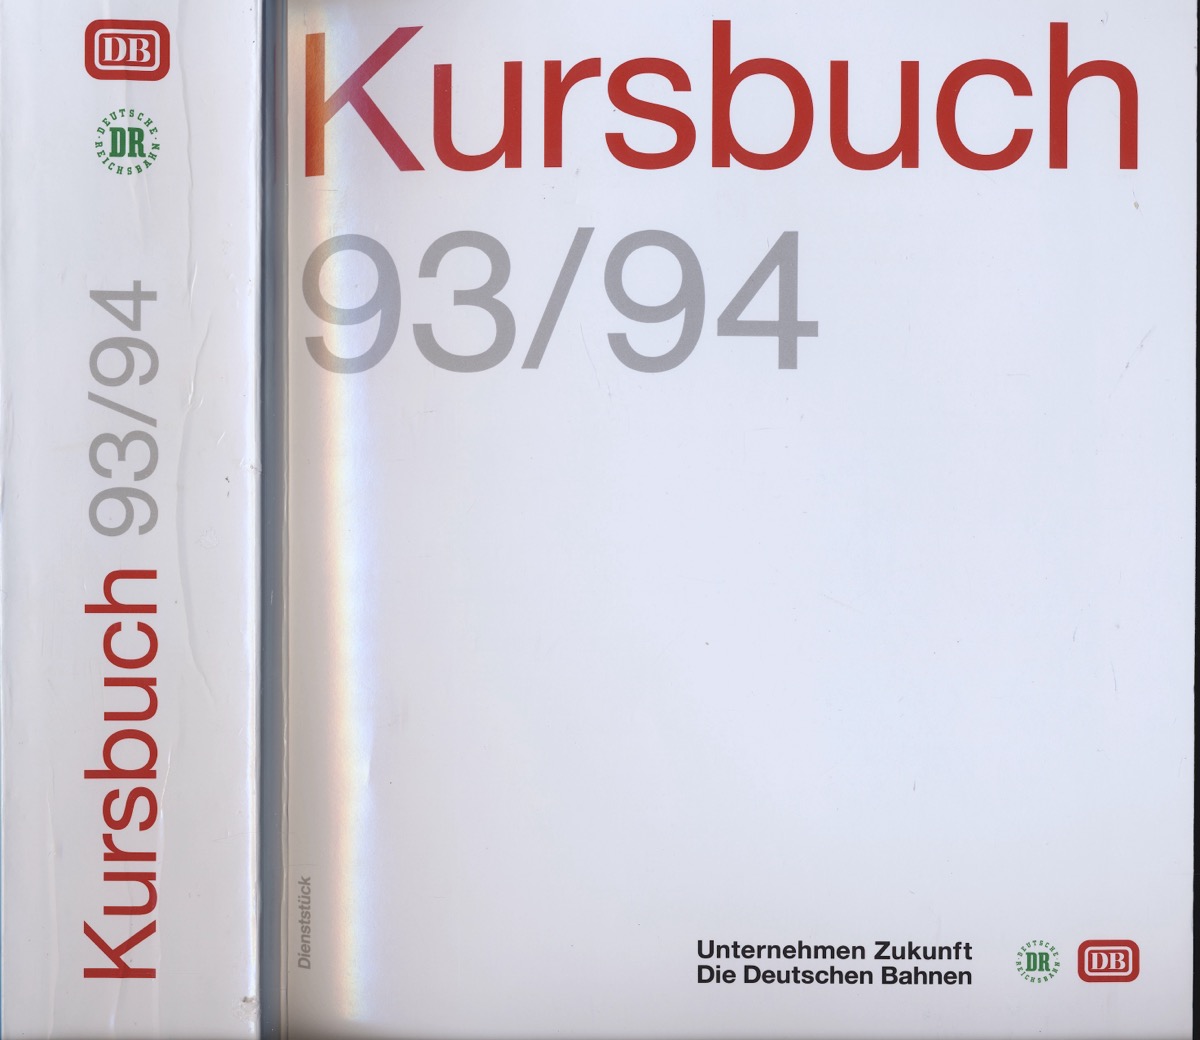 Deutsche Bahn AG  Deutsche Bahn: Kursbuch 1993/94, gültig vom 23.05.1993 bis 28.05.1994. 